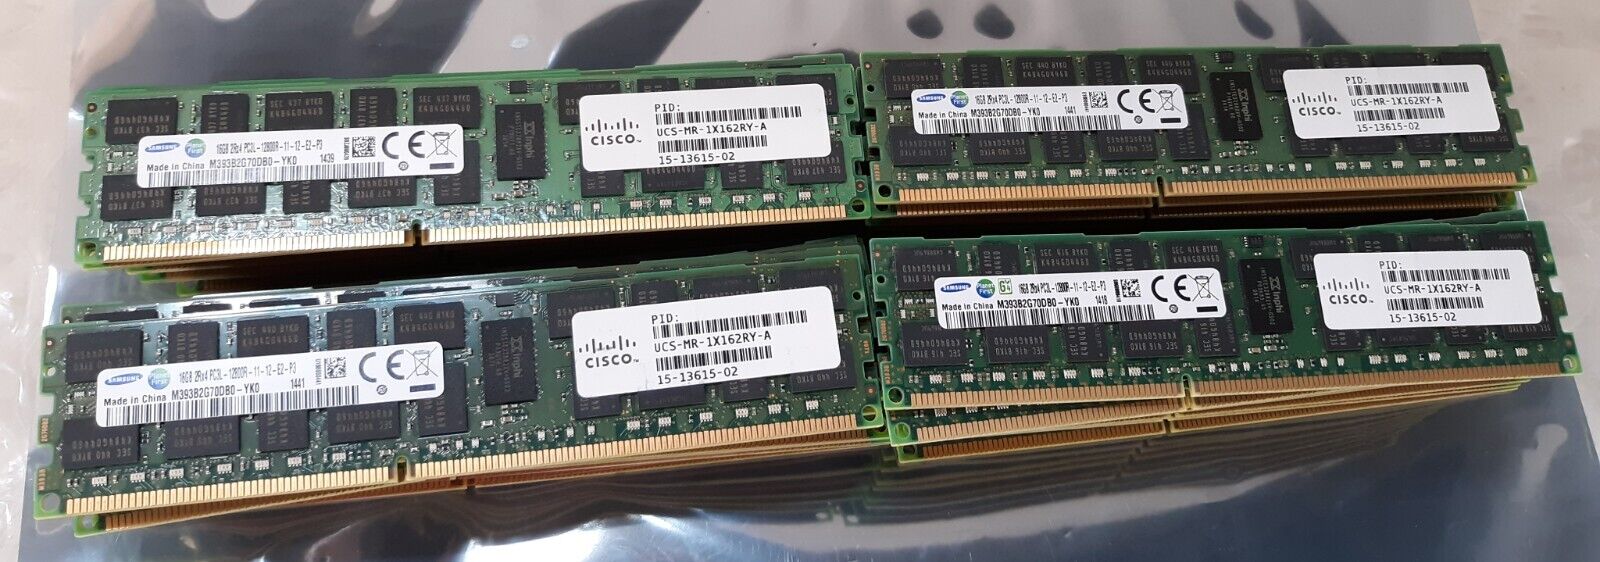 Lot of 40 Samsung 16GB 2Rx4 PC3L-12800R M393B2G70DB0 Server RAM w/ Cisco Sticker